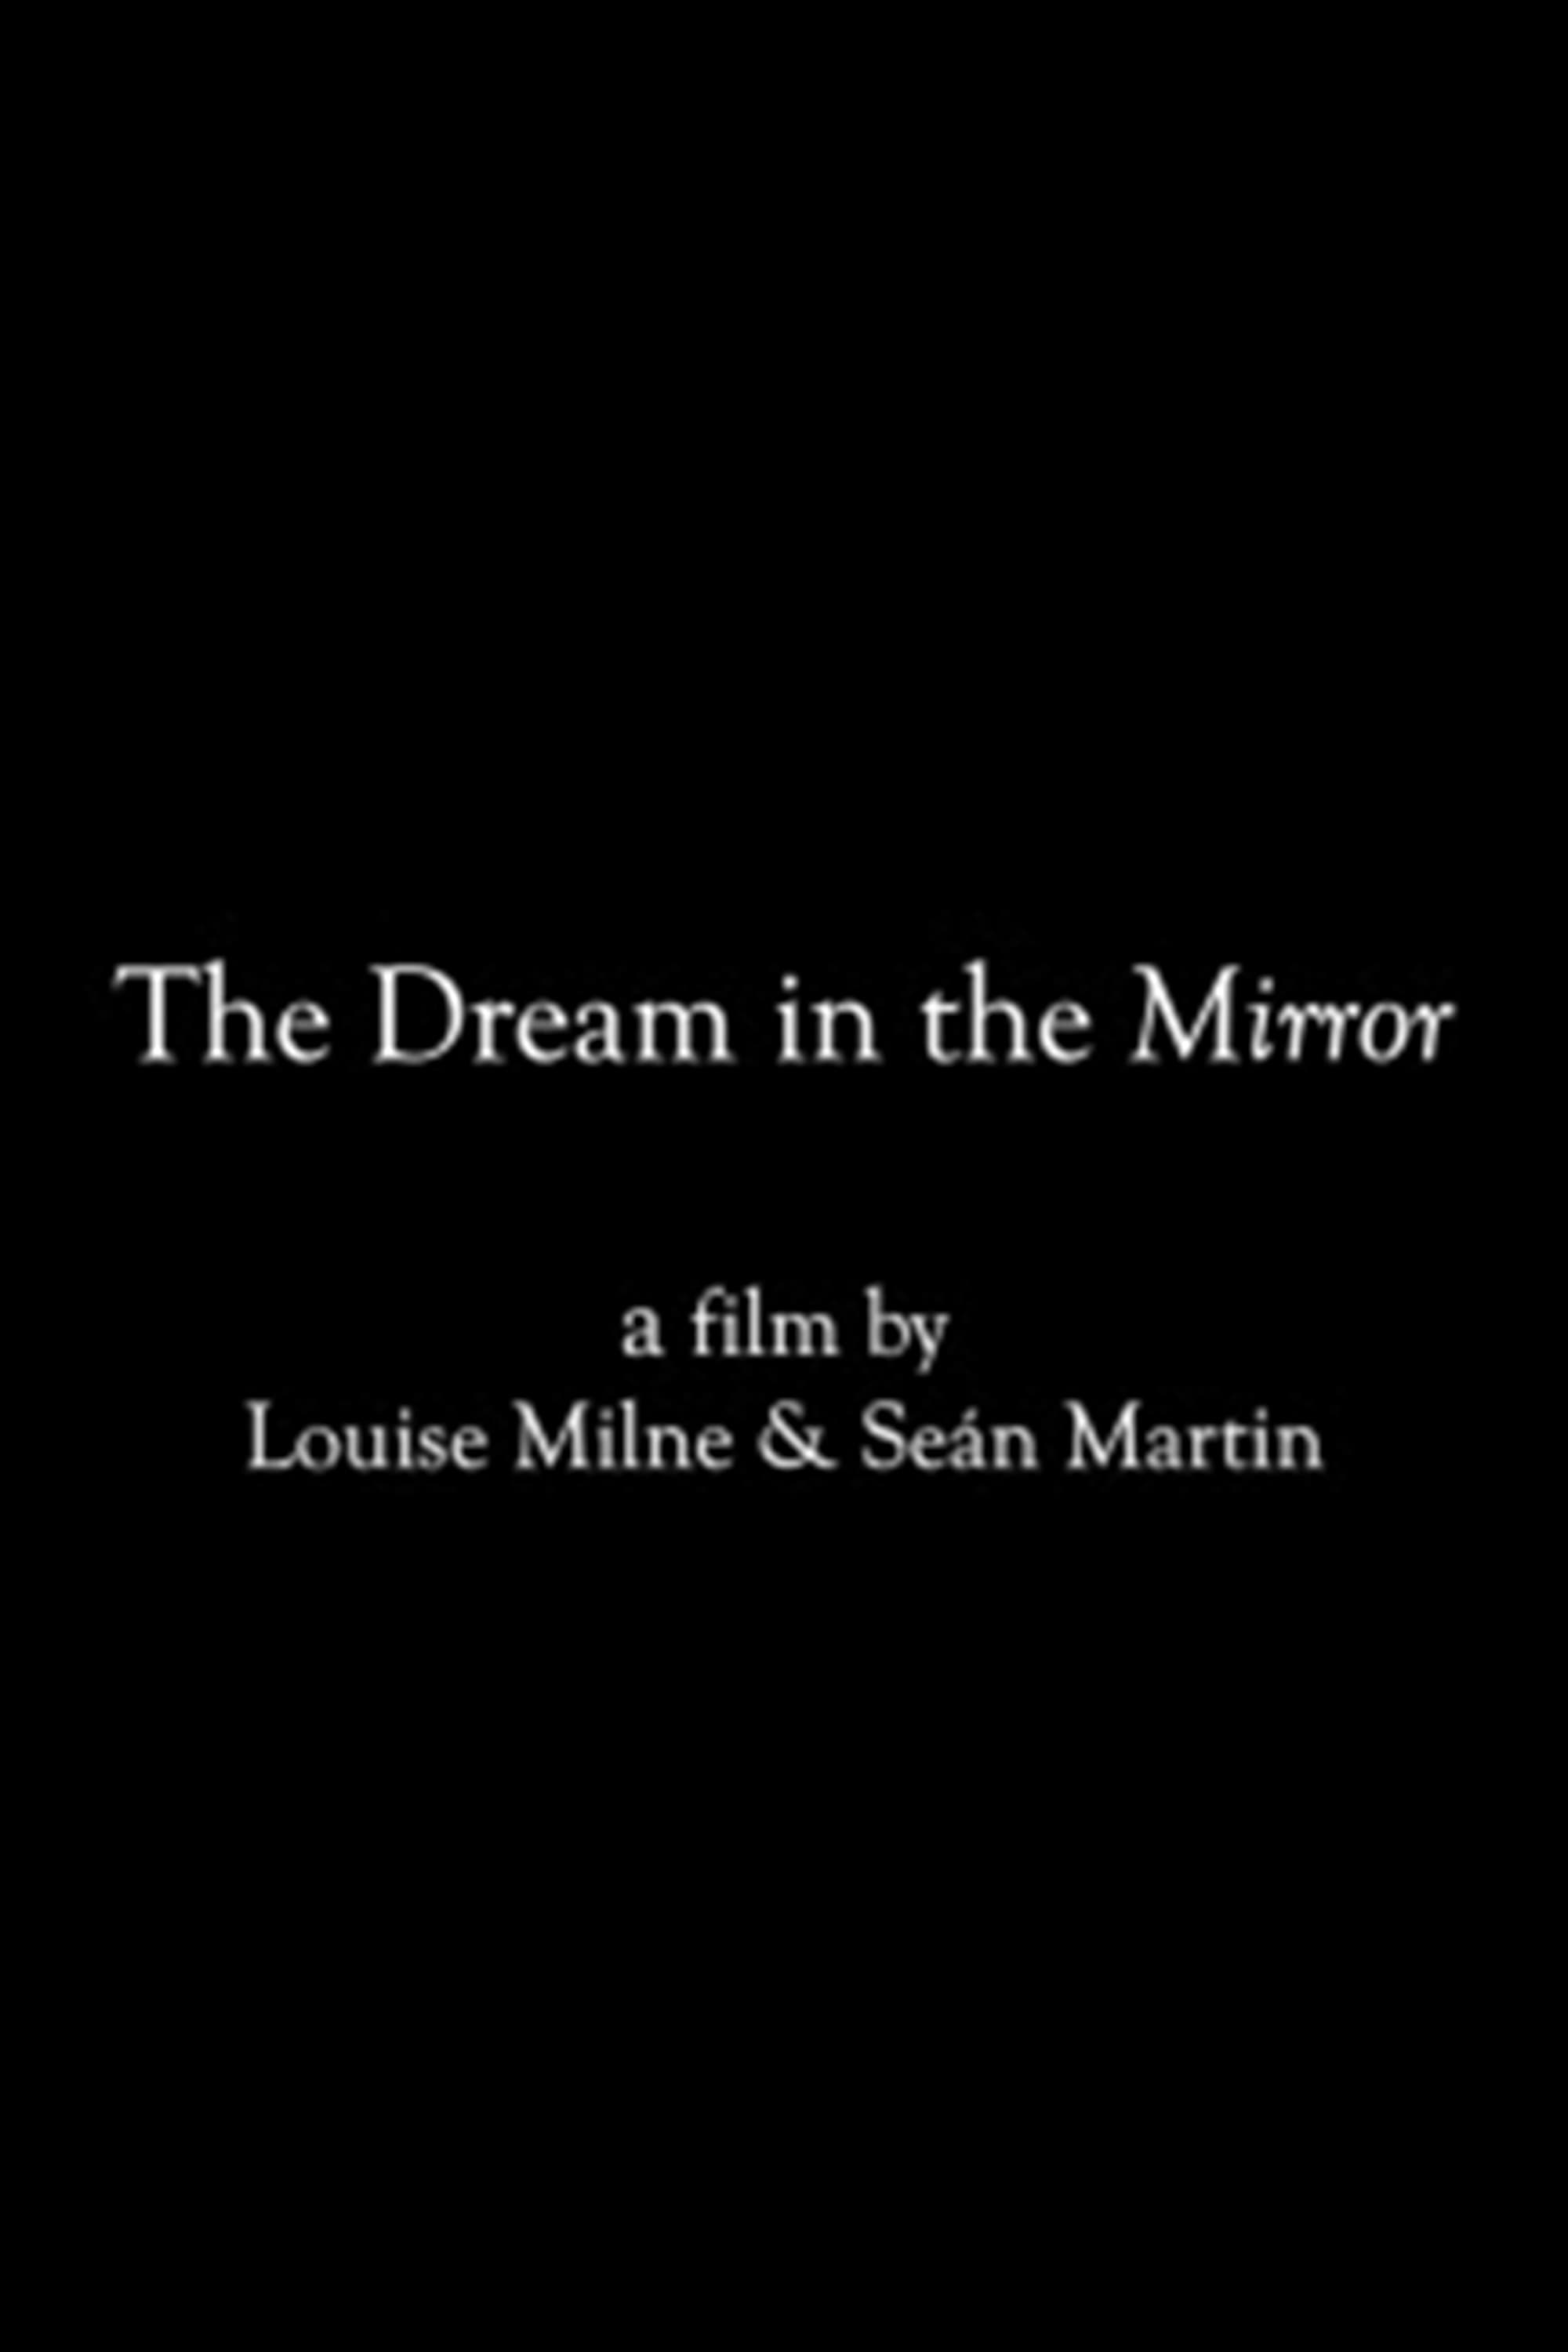 The Dream in the Mirror (2021)